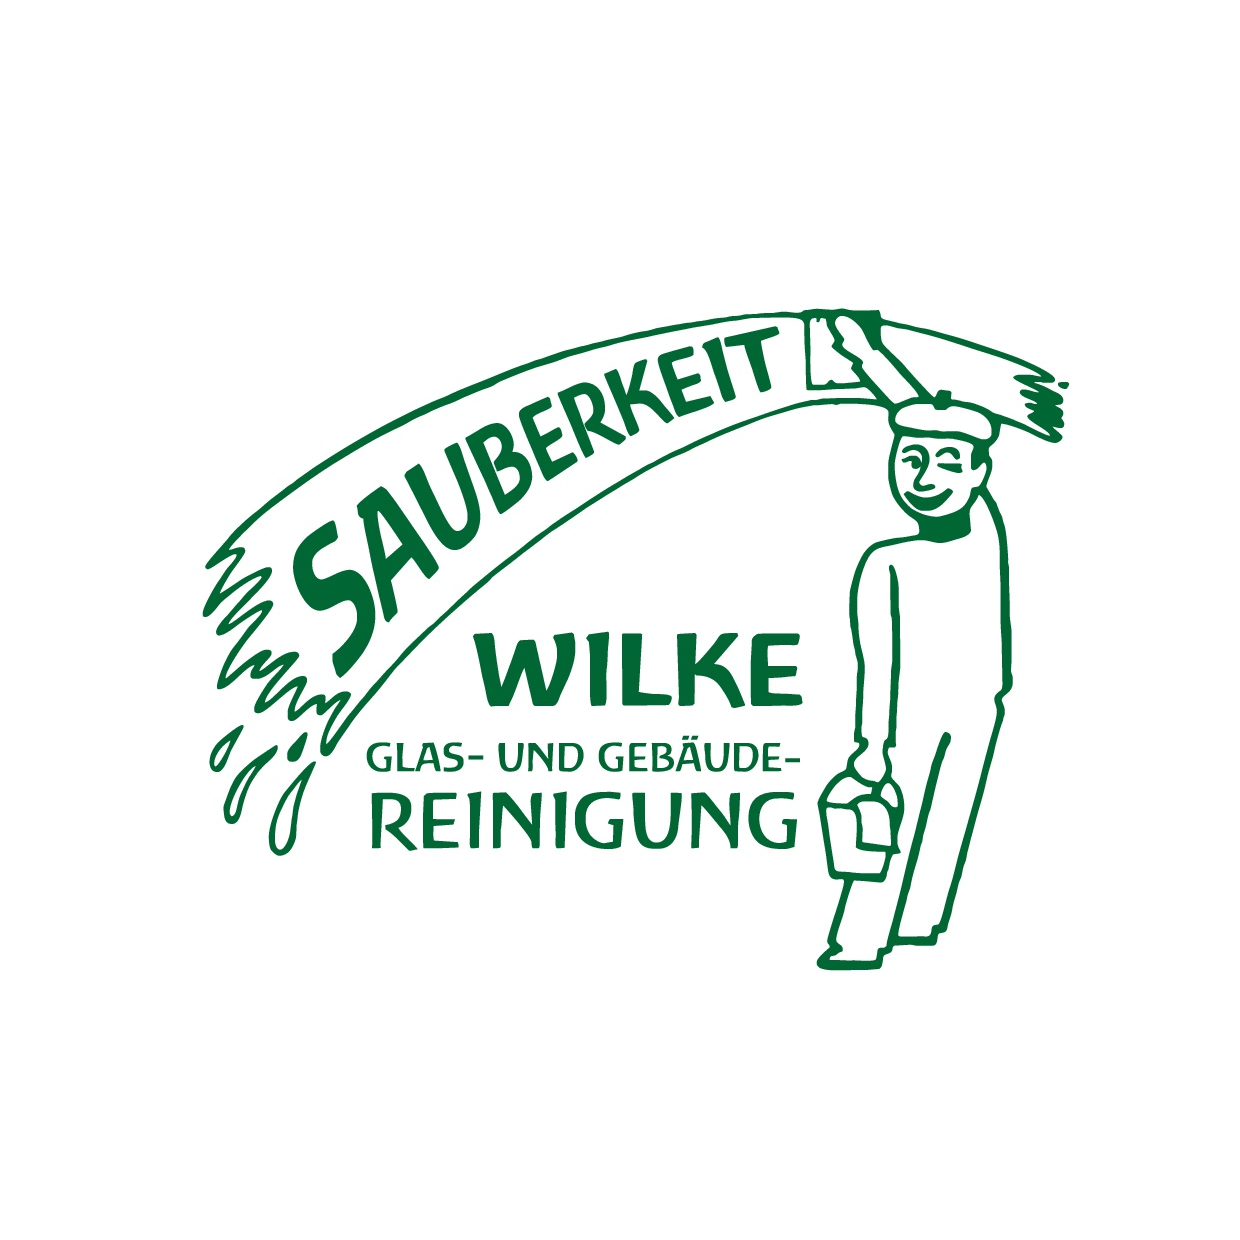 Uwe Wilke Glas- und Gebäudereinigung e.K. in Wernigerode - Logo